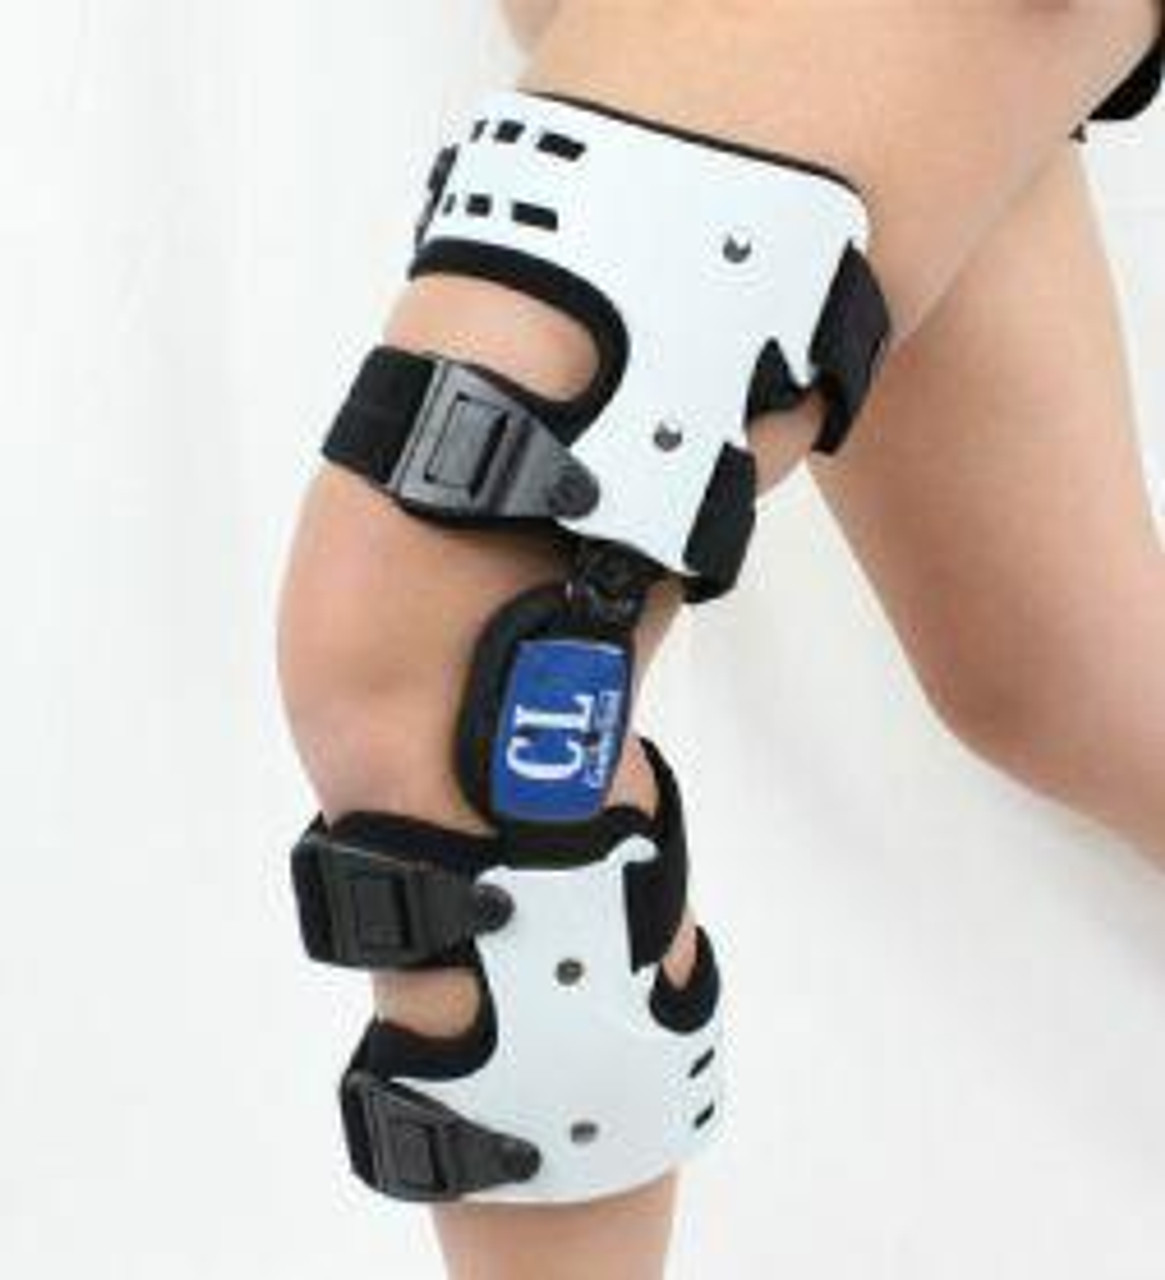 Breg OA Unloader Knee Braces For Osteoarthritis 